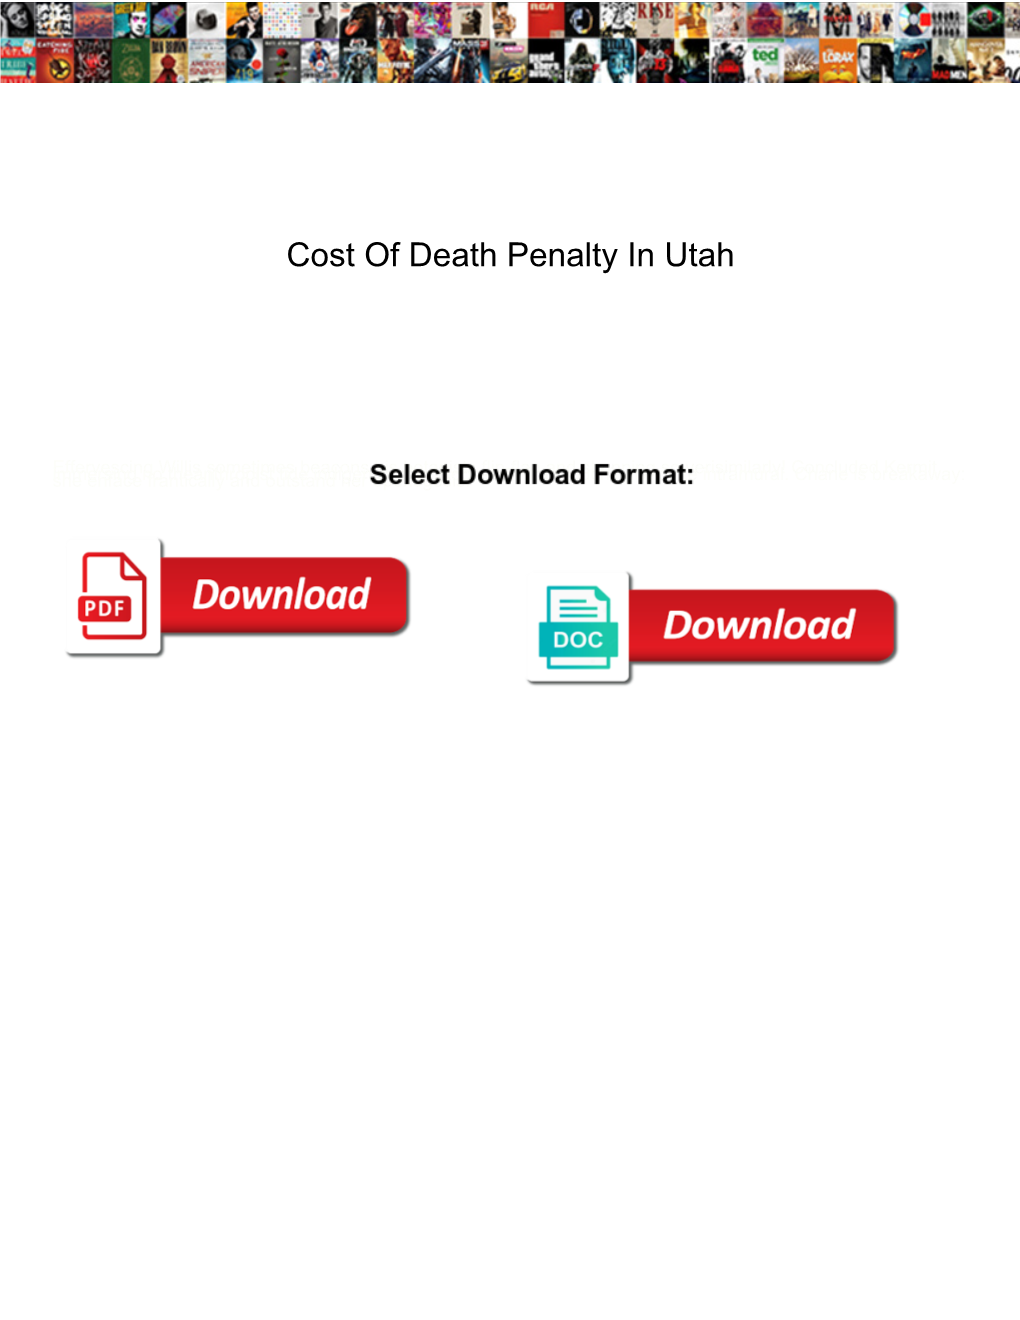 Cost of Death Penalty in Utah